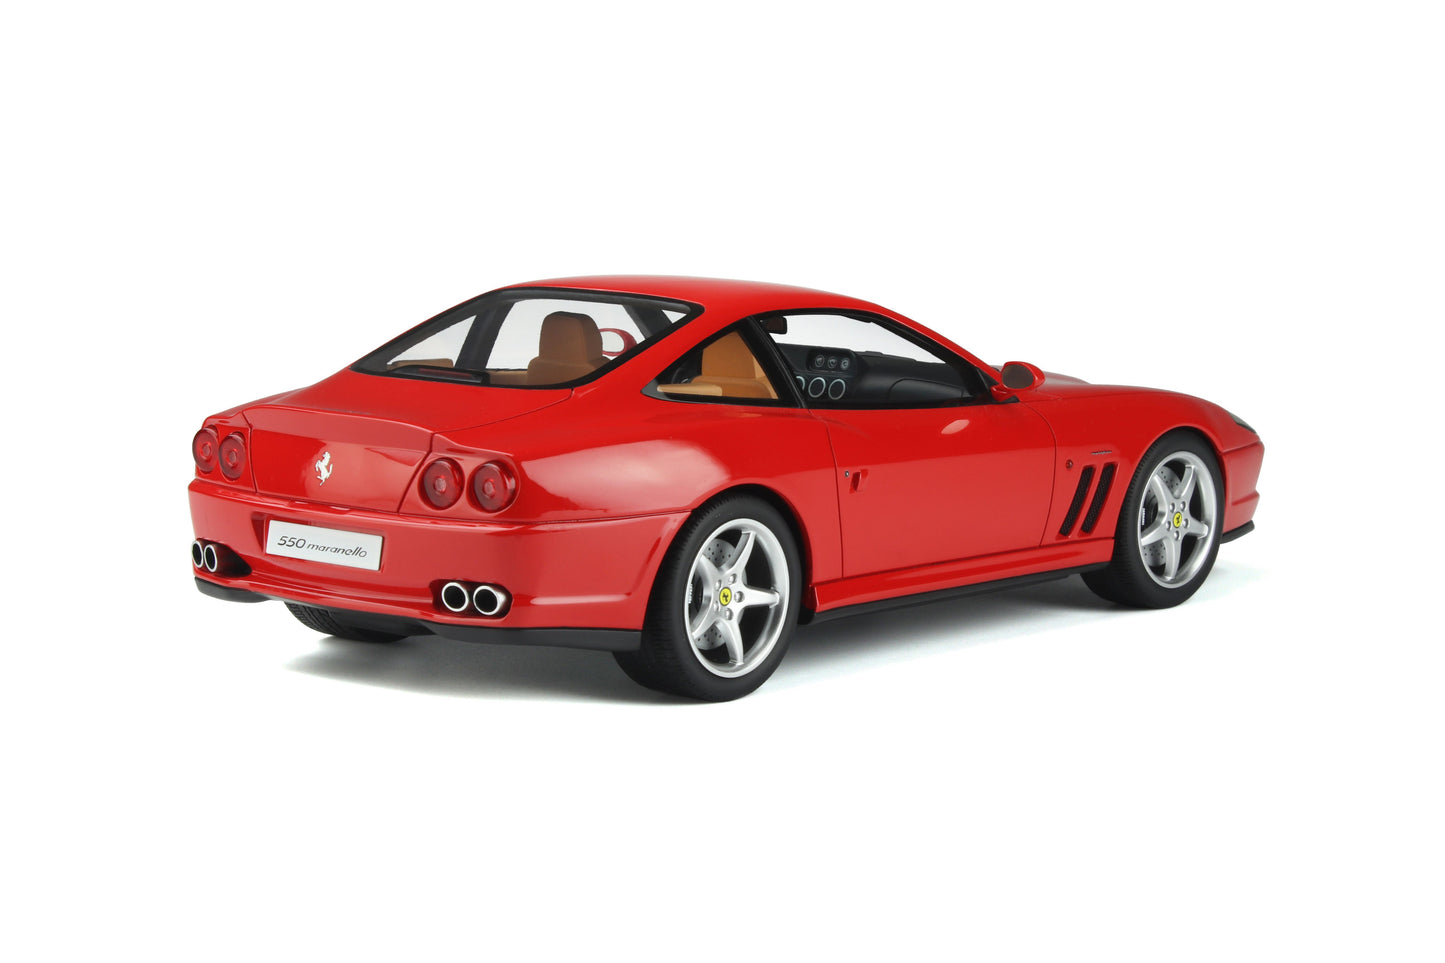 GT Spirit 1:18 1996 Ferrari F550 Maranello Gran Turismo Red GT335